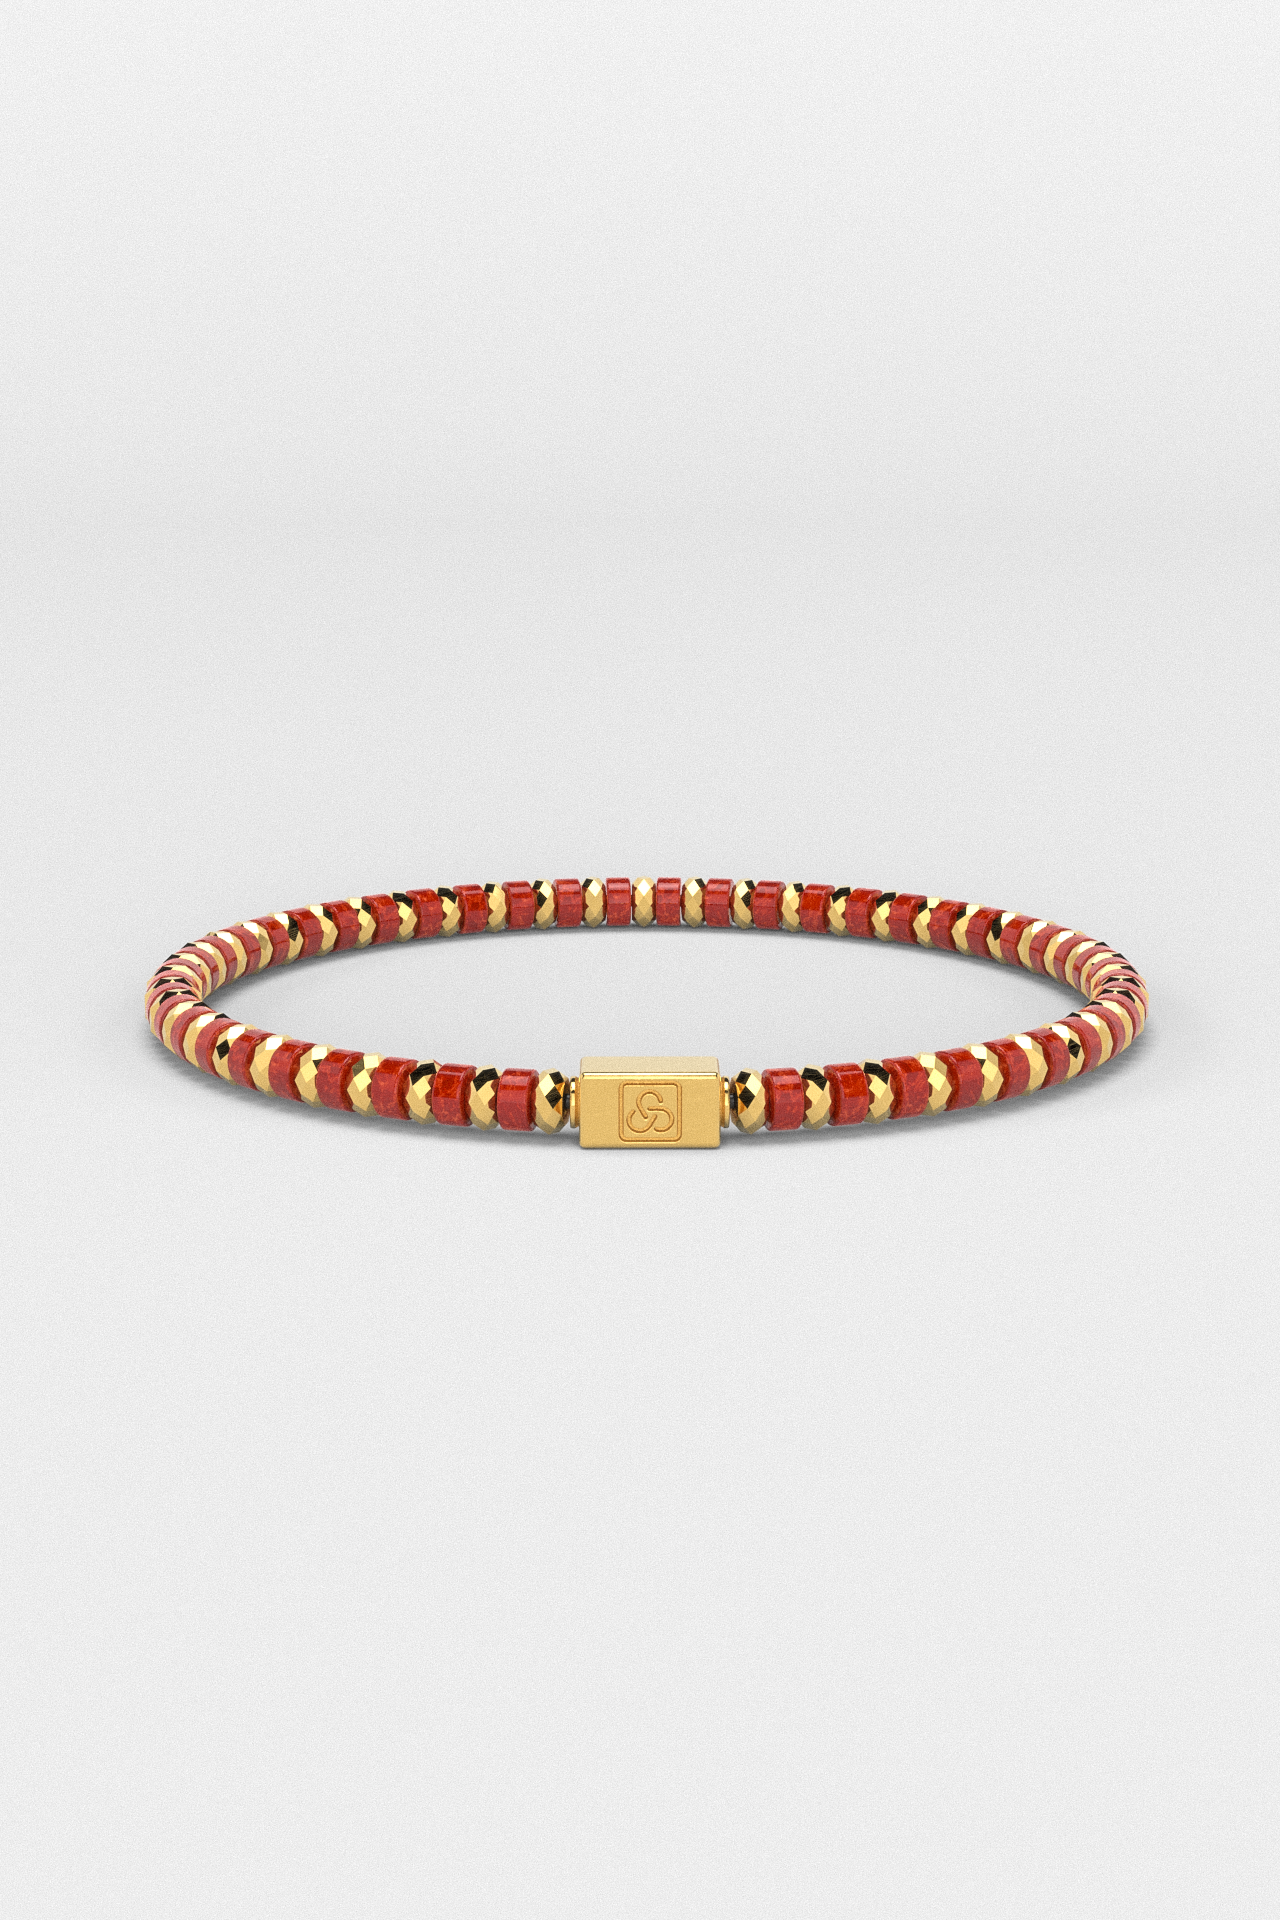 Red Jade Bracelet 4mm | Spacer